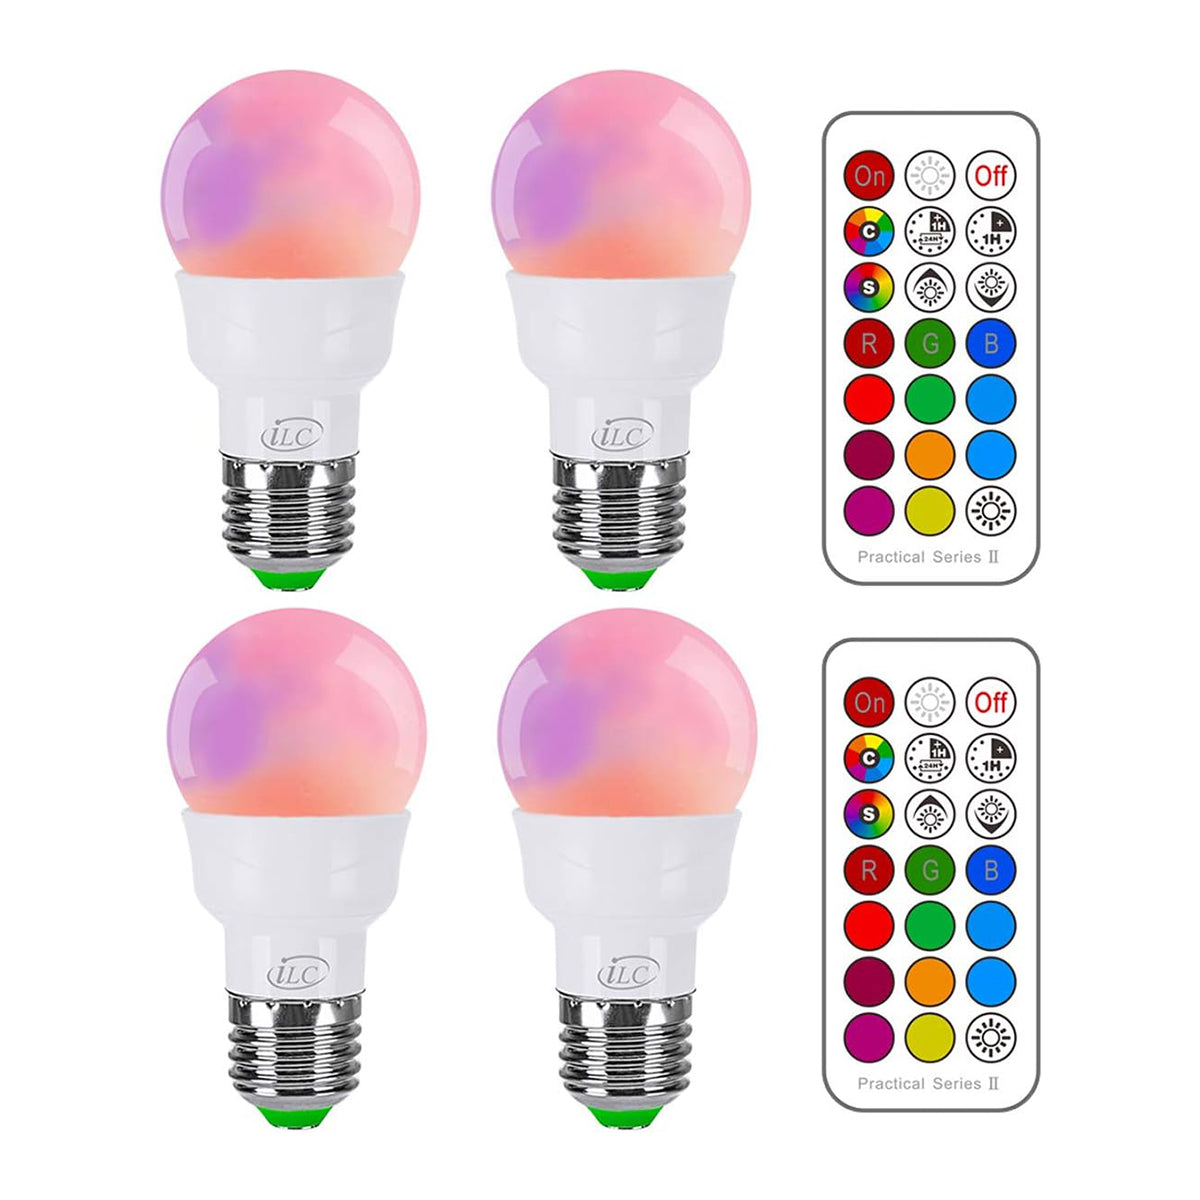 Lampadina LED RGB iLC, equivalente a 40 W che cambia colore, dimmerabi